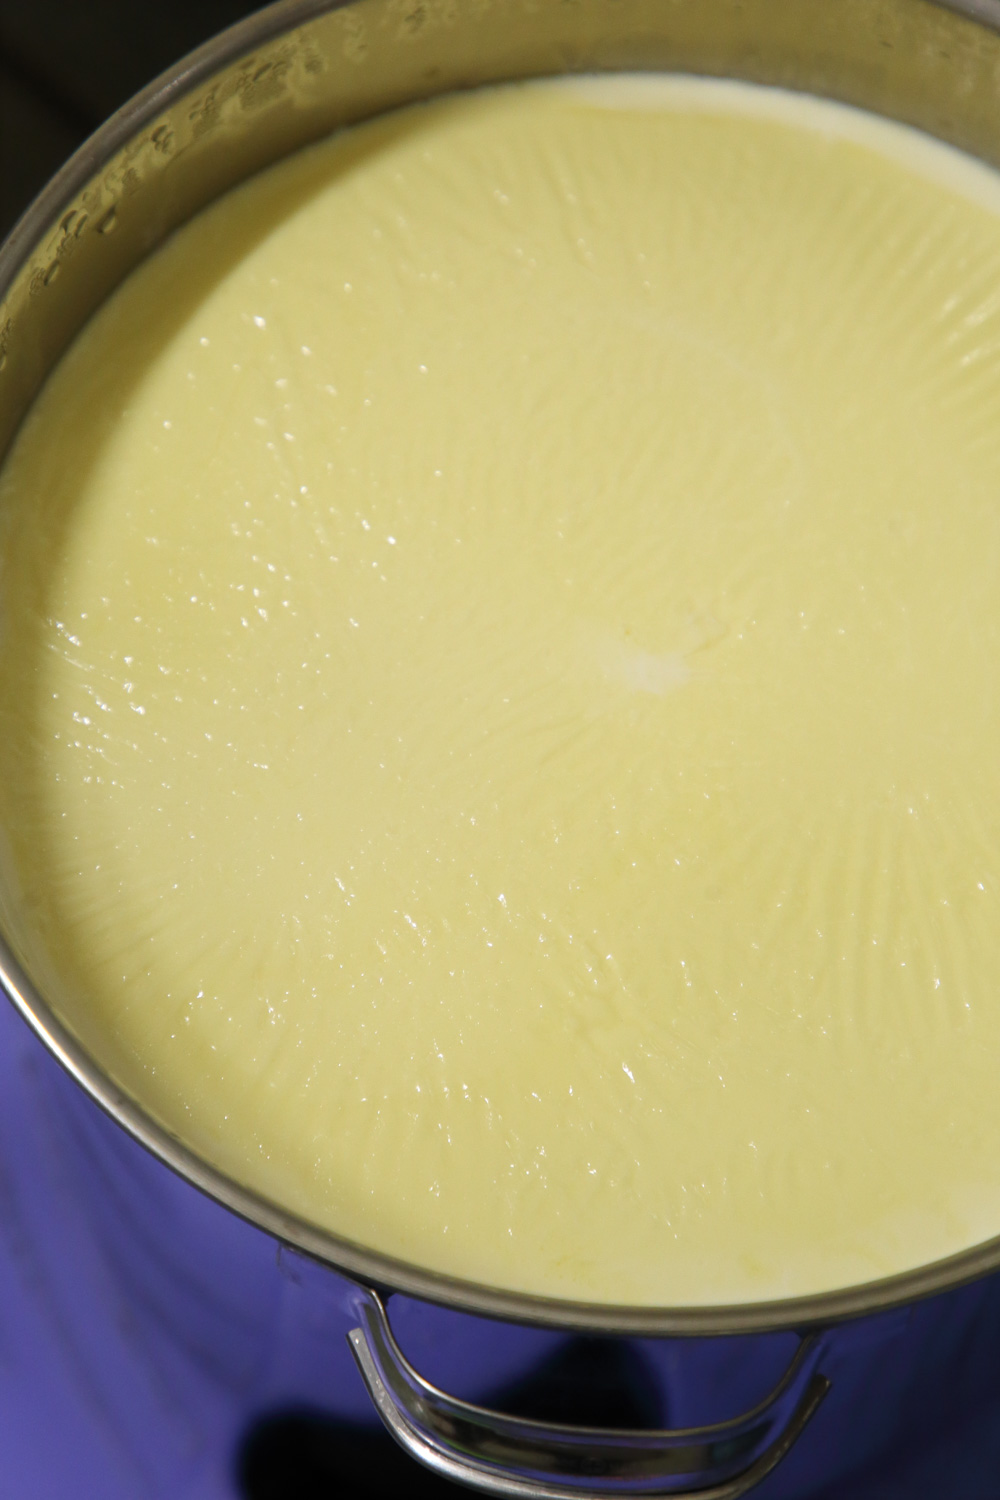 ジャージーの乳は黄色みを帯び、搾りたてなので温かい。